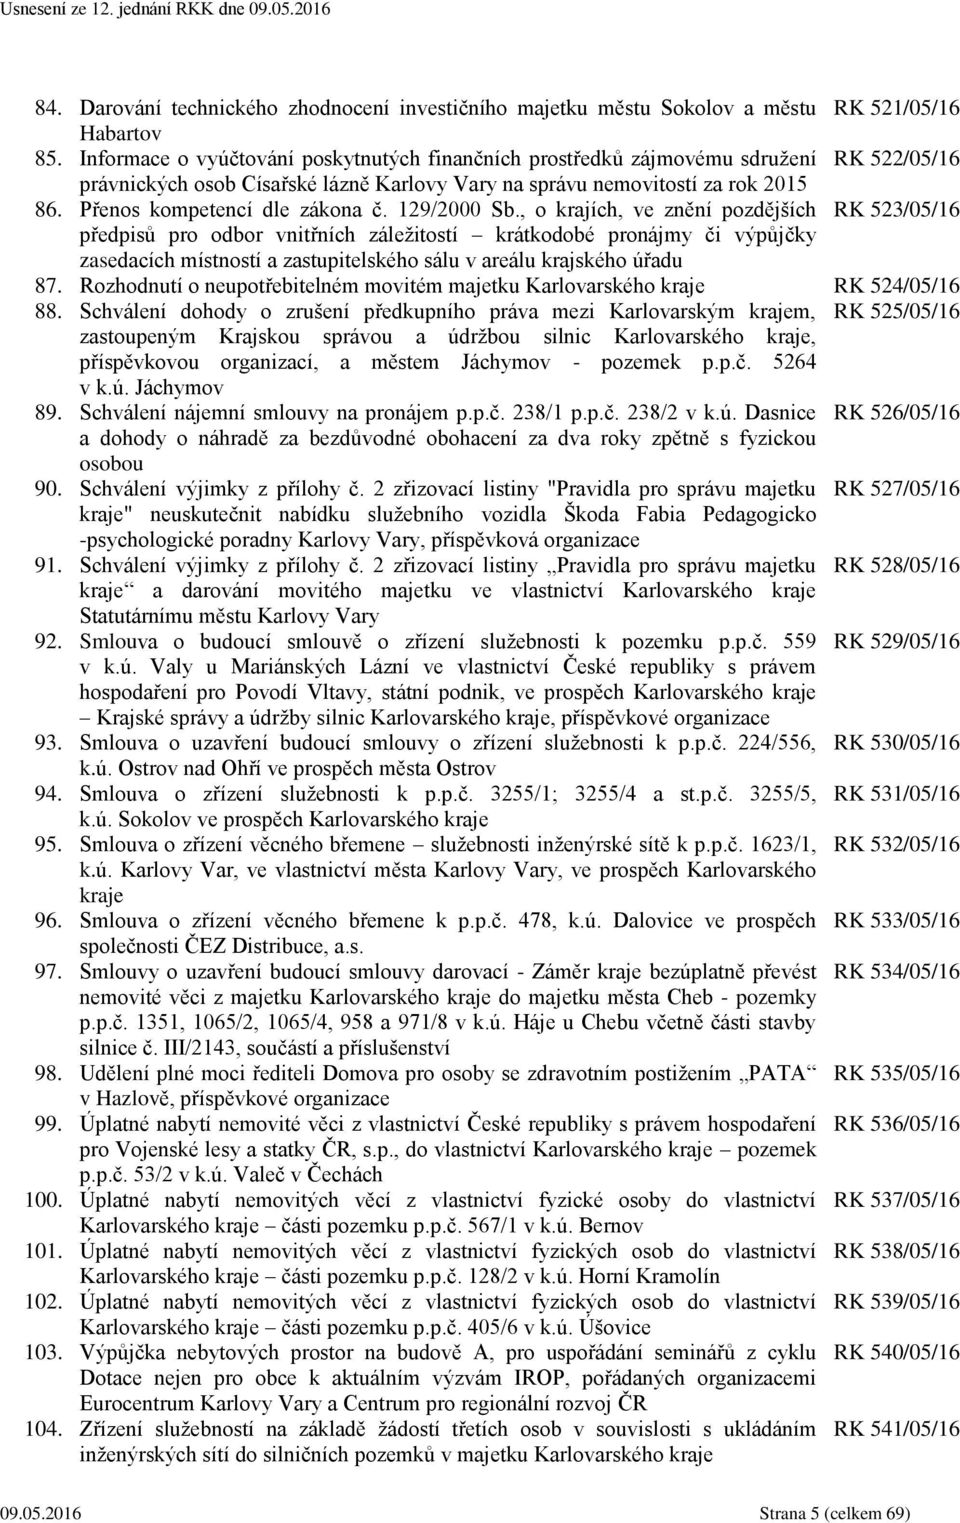 Přenos kompetencí dle zákona č. 129/2000 Sb.